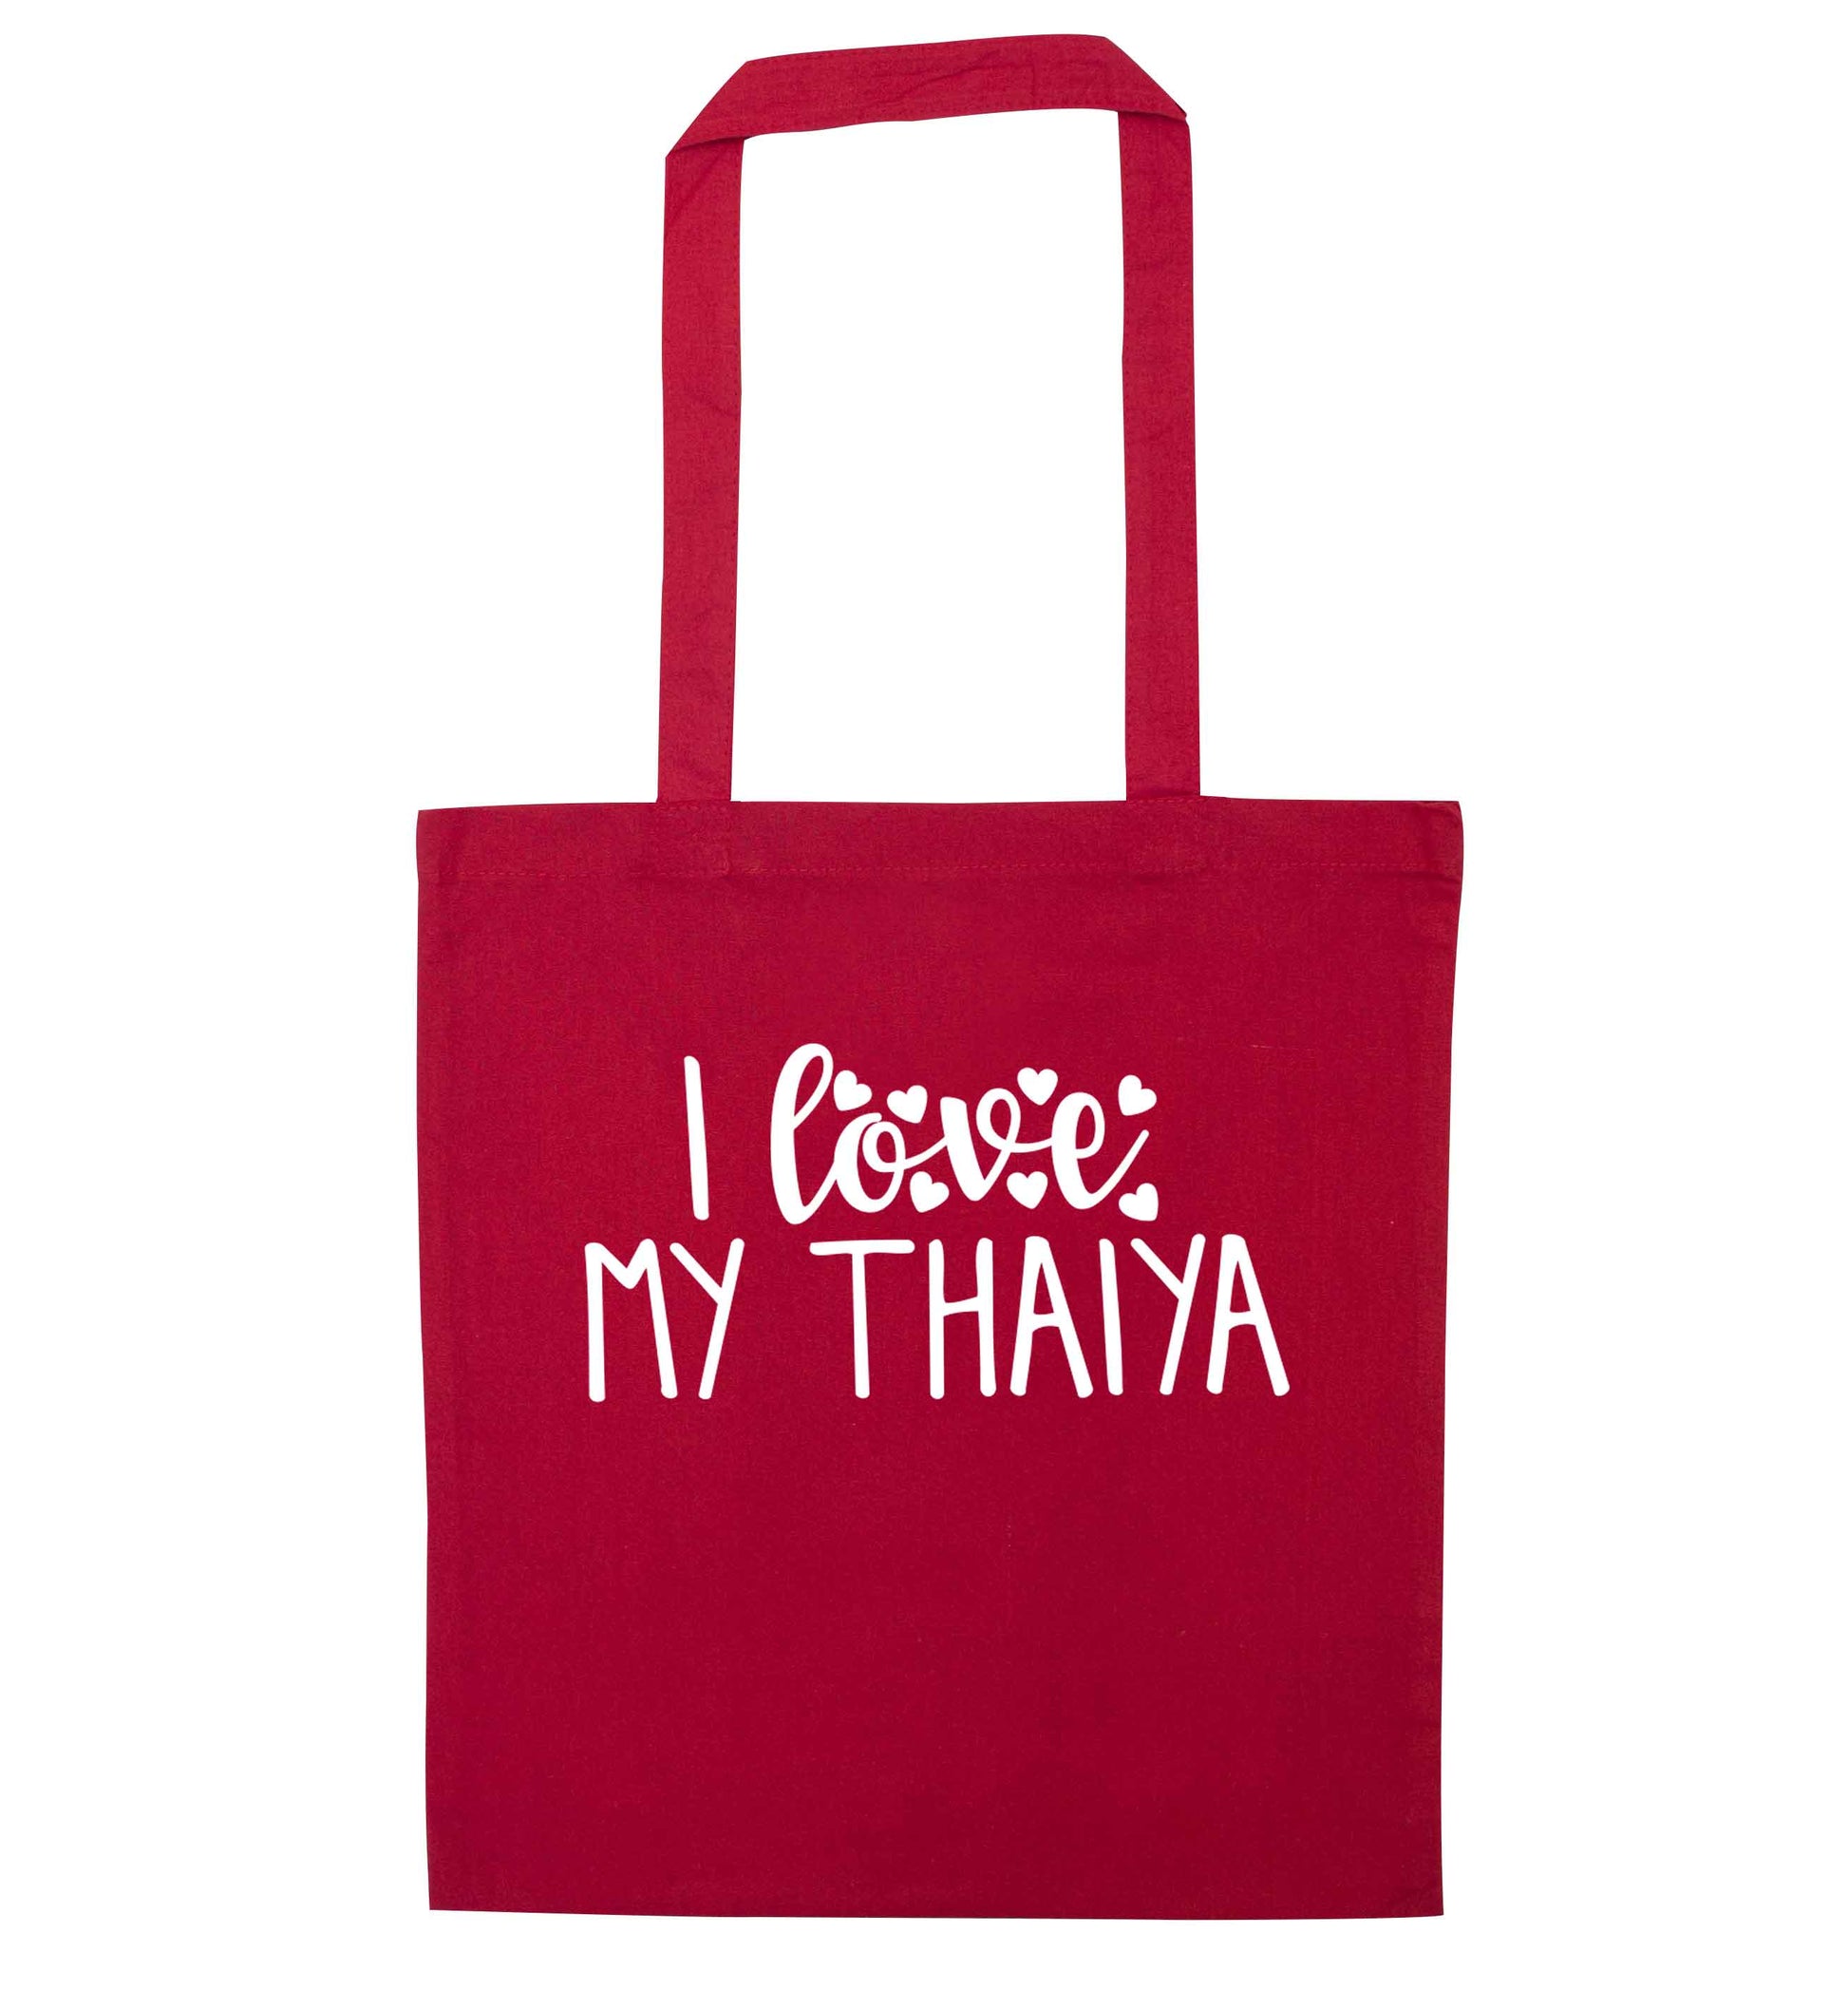 I love my thaiya red tote bag